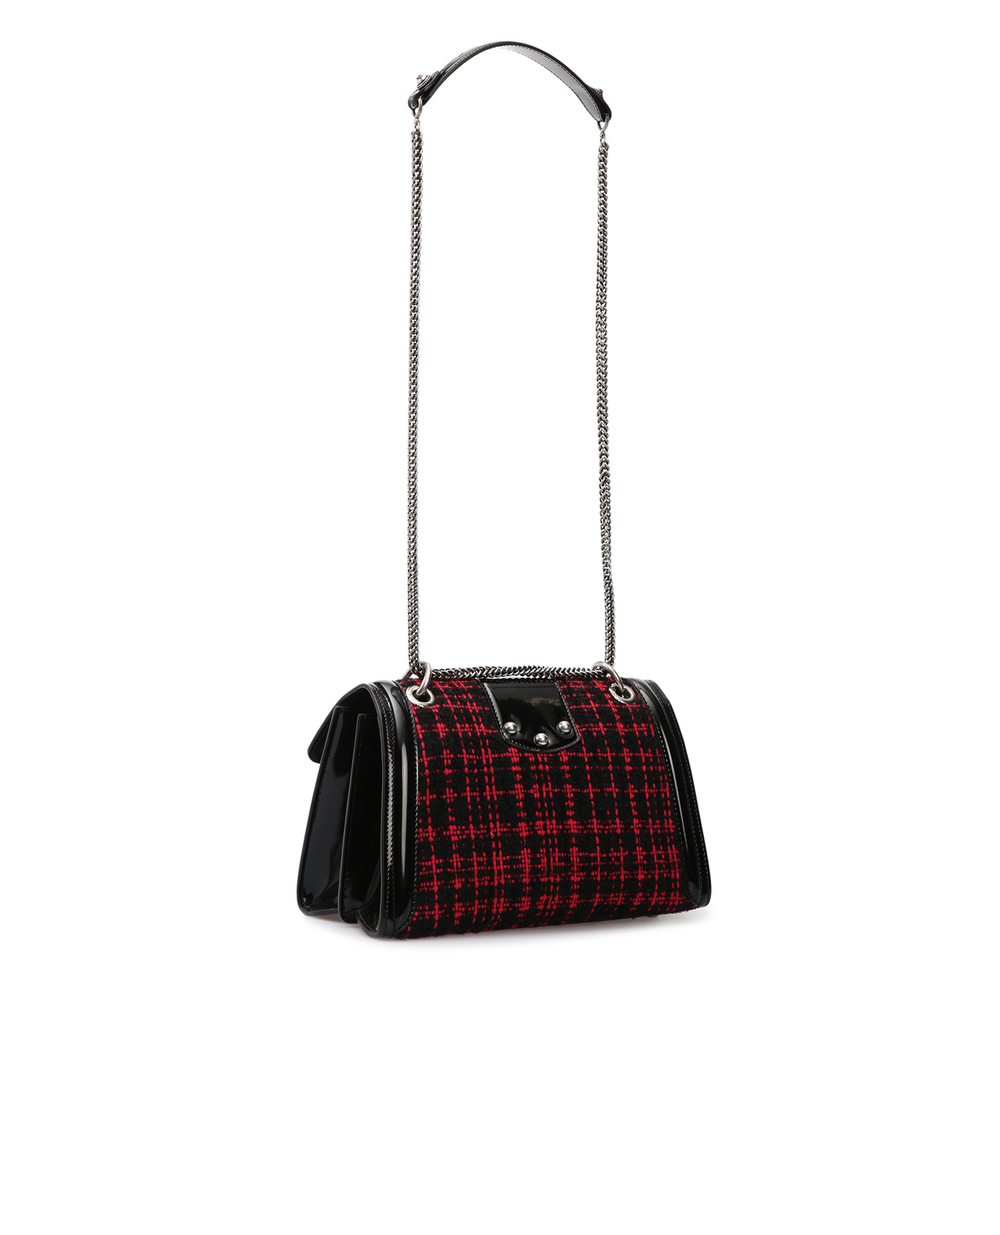 Твидовая сумка Amore Dolce&Gabbana BB6748-AW045, черный цвет • Купить в интернет-магазине Kameron